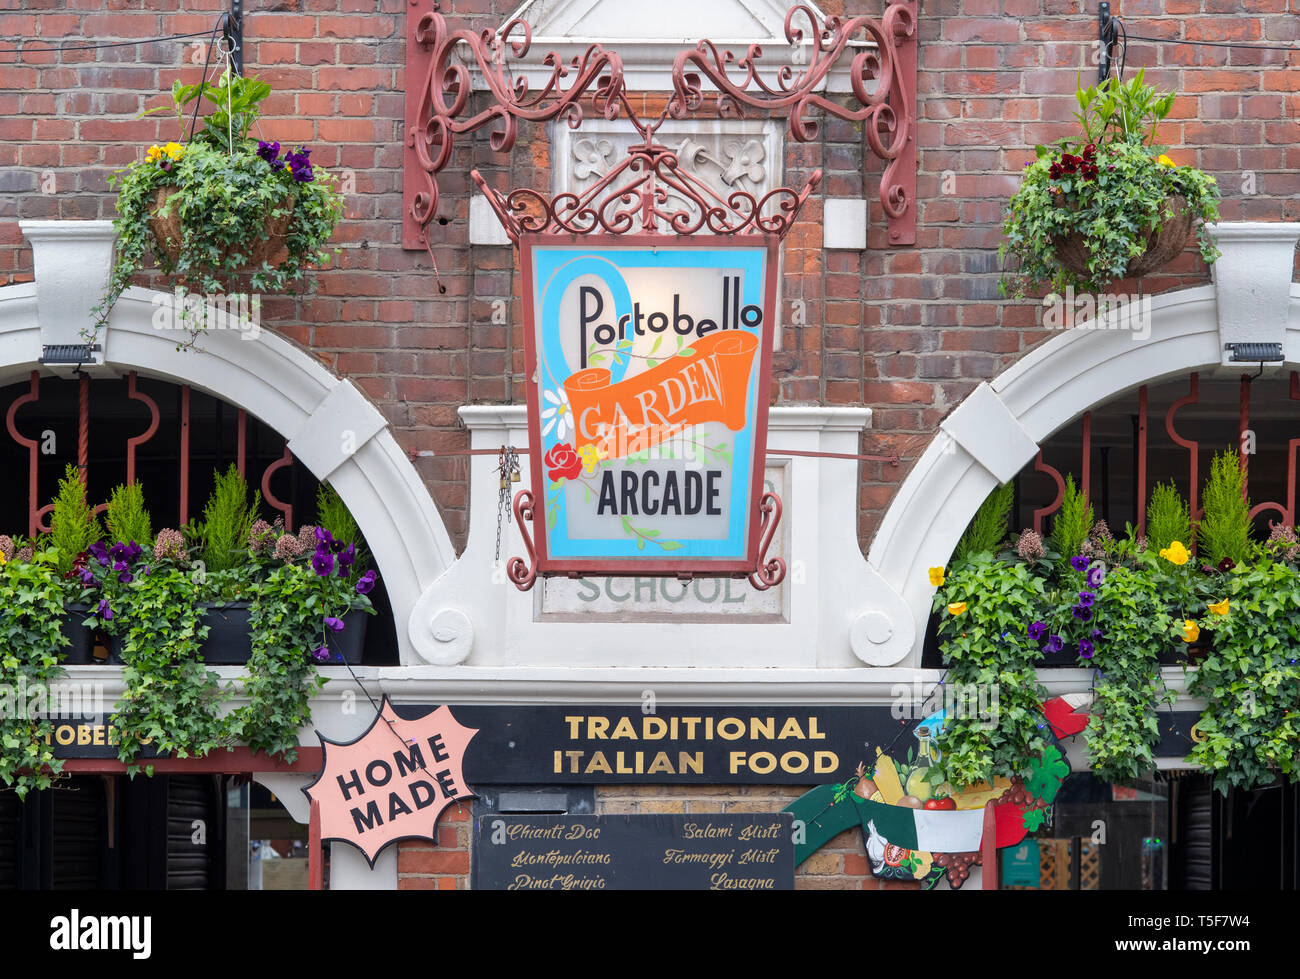 Jardin extérieur arcade Portobello. Restaurant italien à Portobello Road, Notting Hill, Londres, Angleterre Banque D'Images